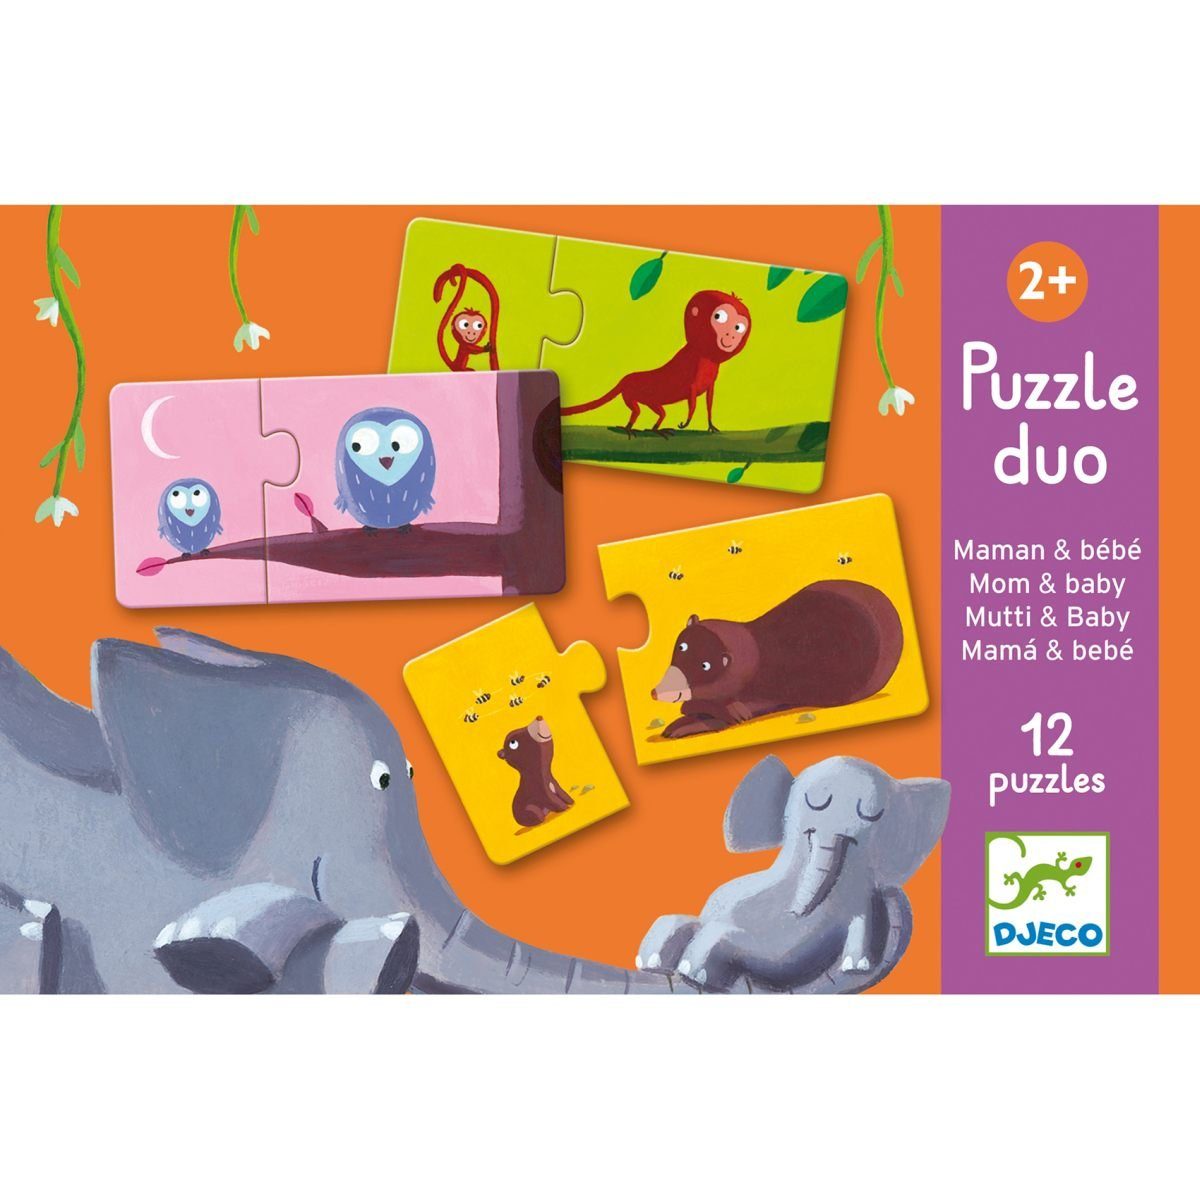 Assoziationsspiel 2 für Puzzle Duo Kinder Puzzle 2 Puzzleteile ab Lernspiel Jahren, DJECO